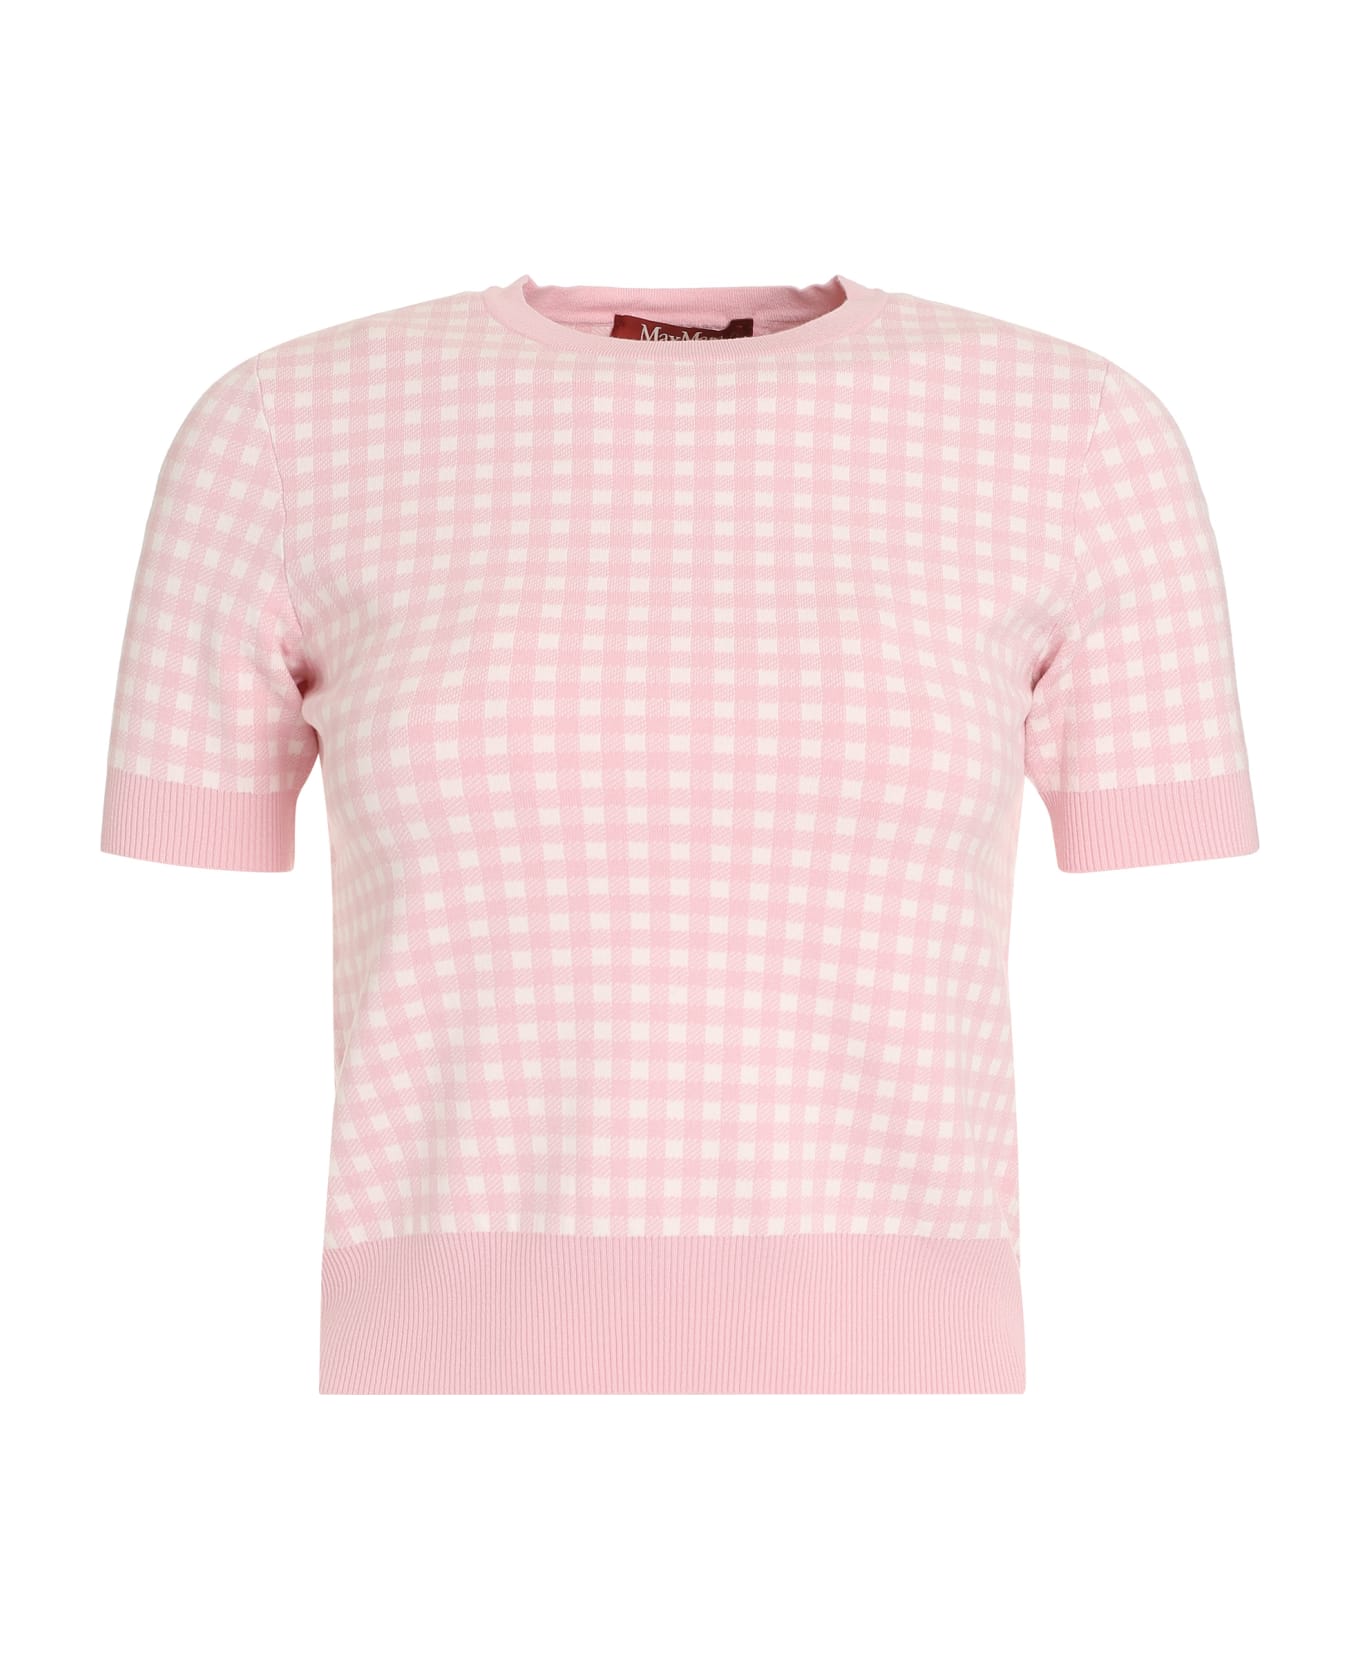 Max Mara Studio Epoca Knitted T-shirt - Pink